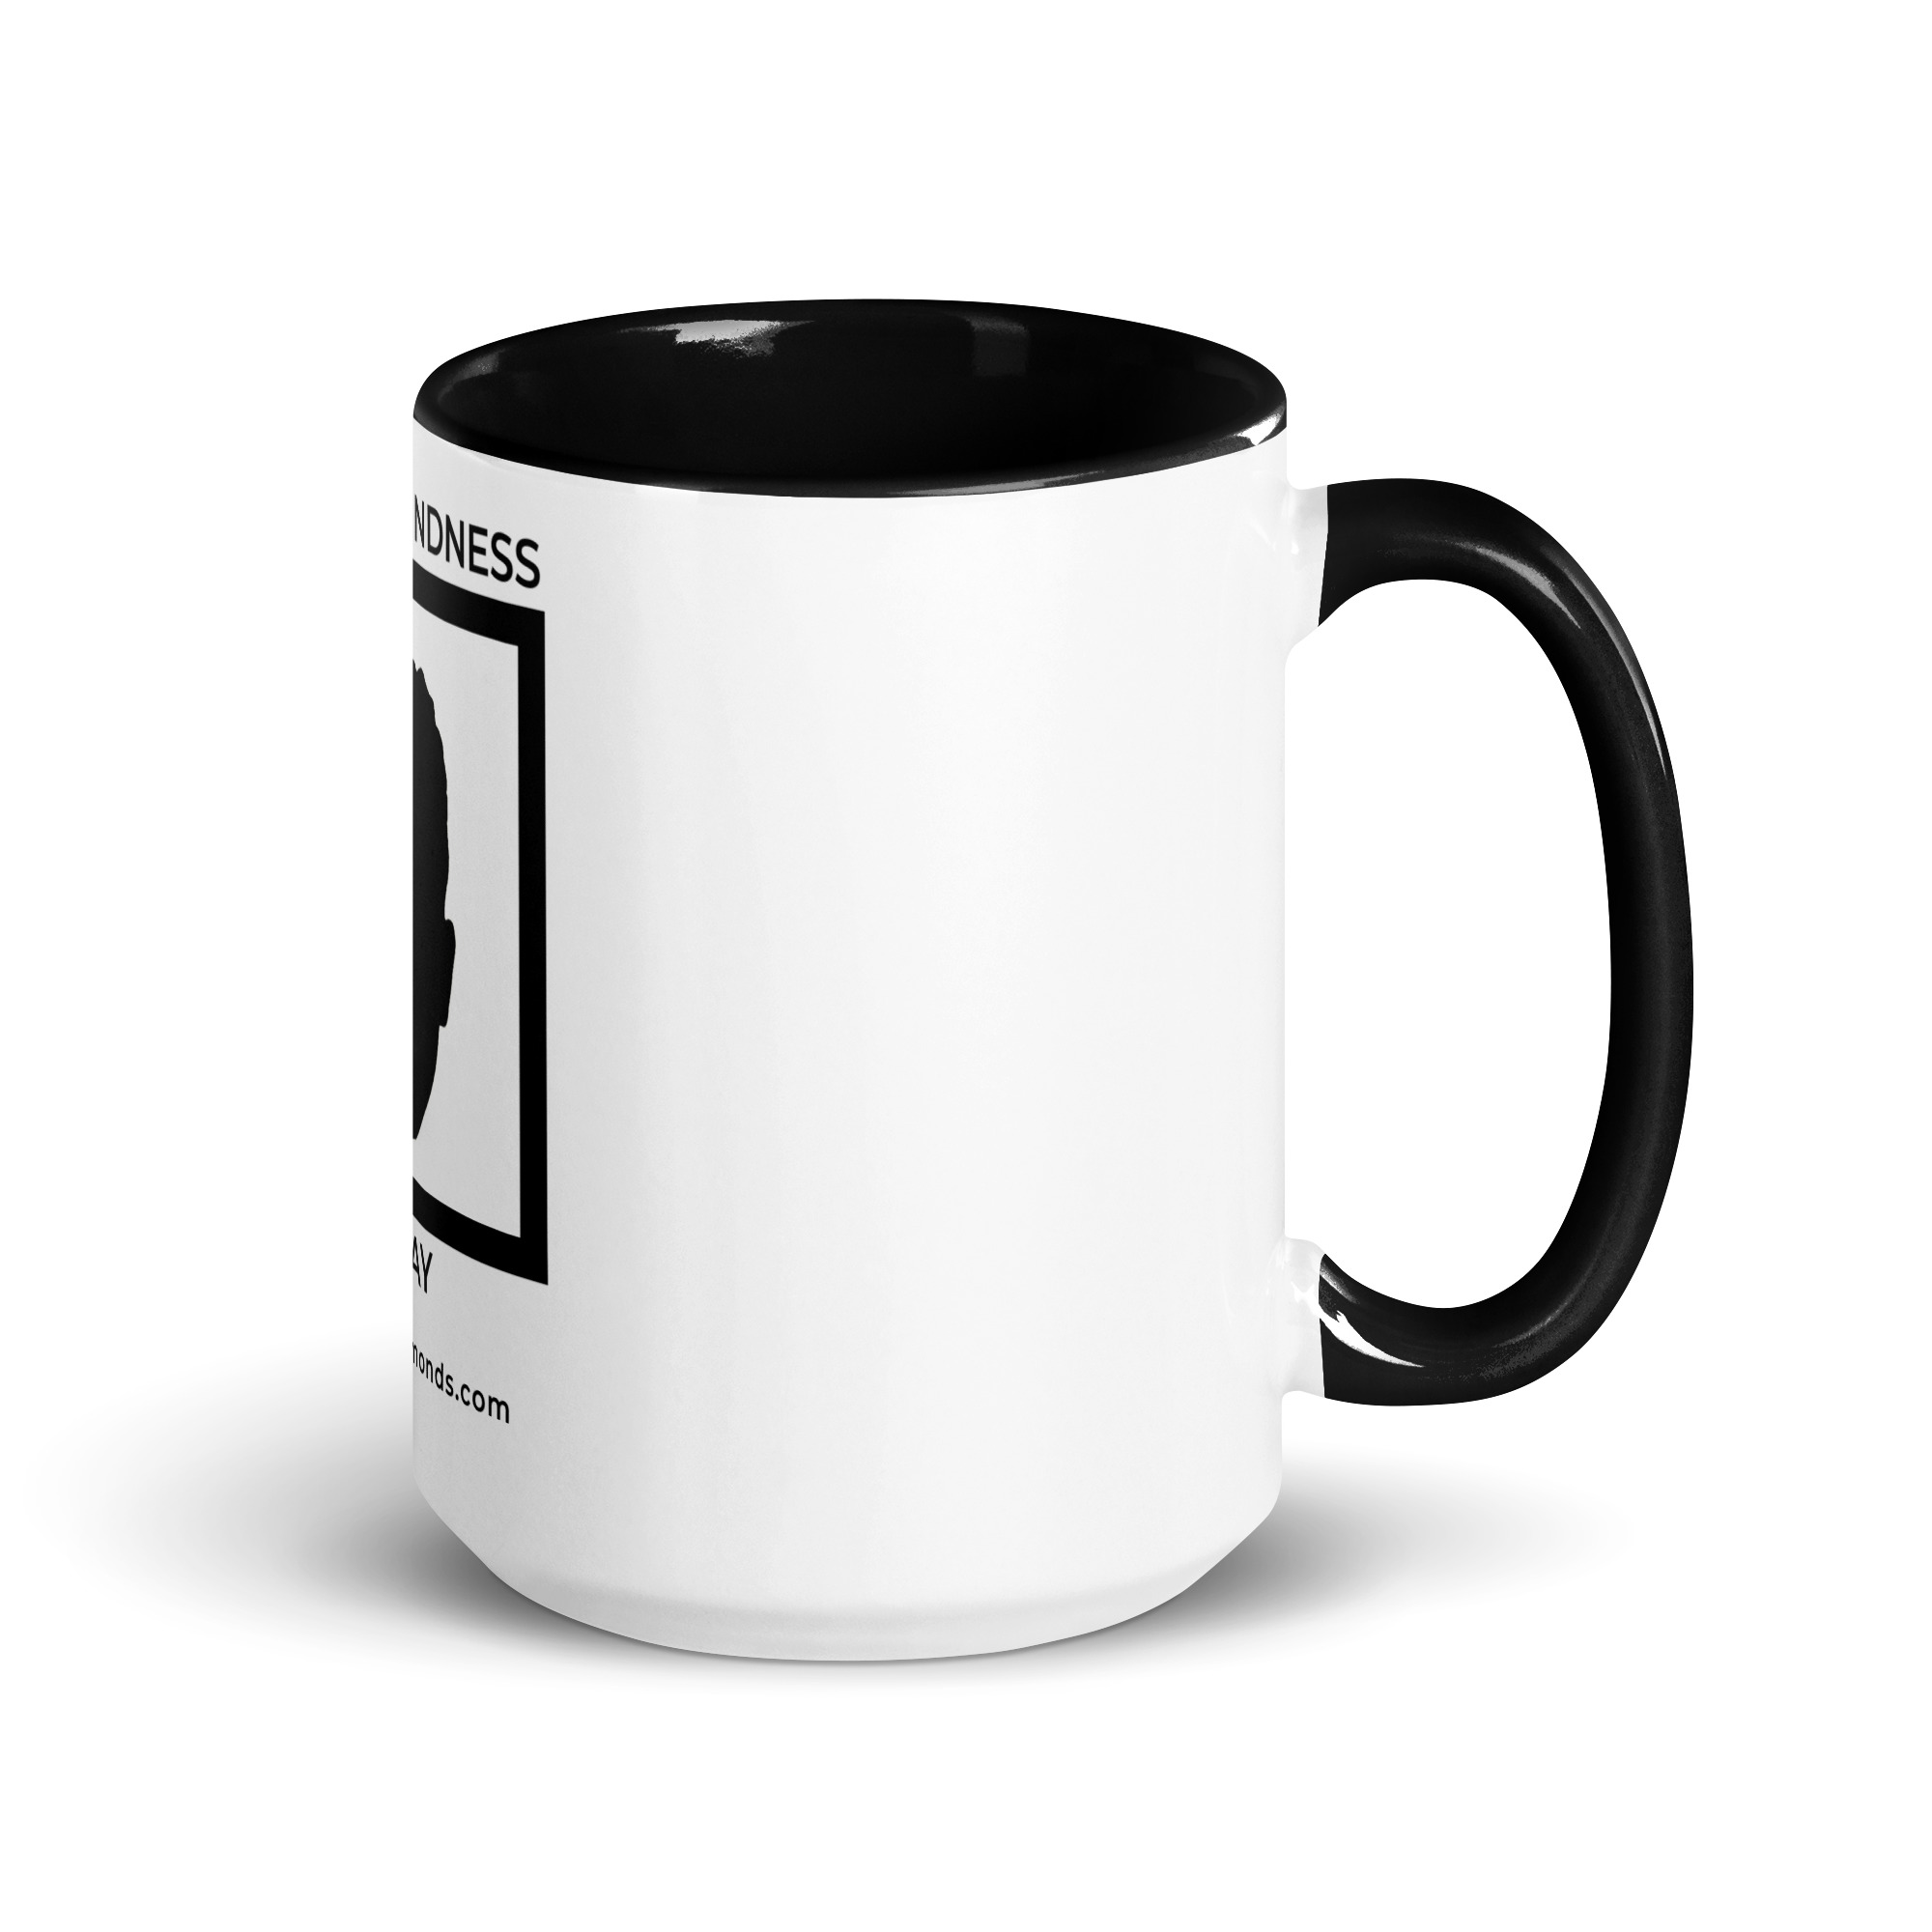 white-ceramic-mug-with-color-inside-black-15-oz-right-6522a1a403a17.jpg